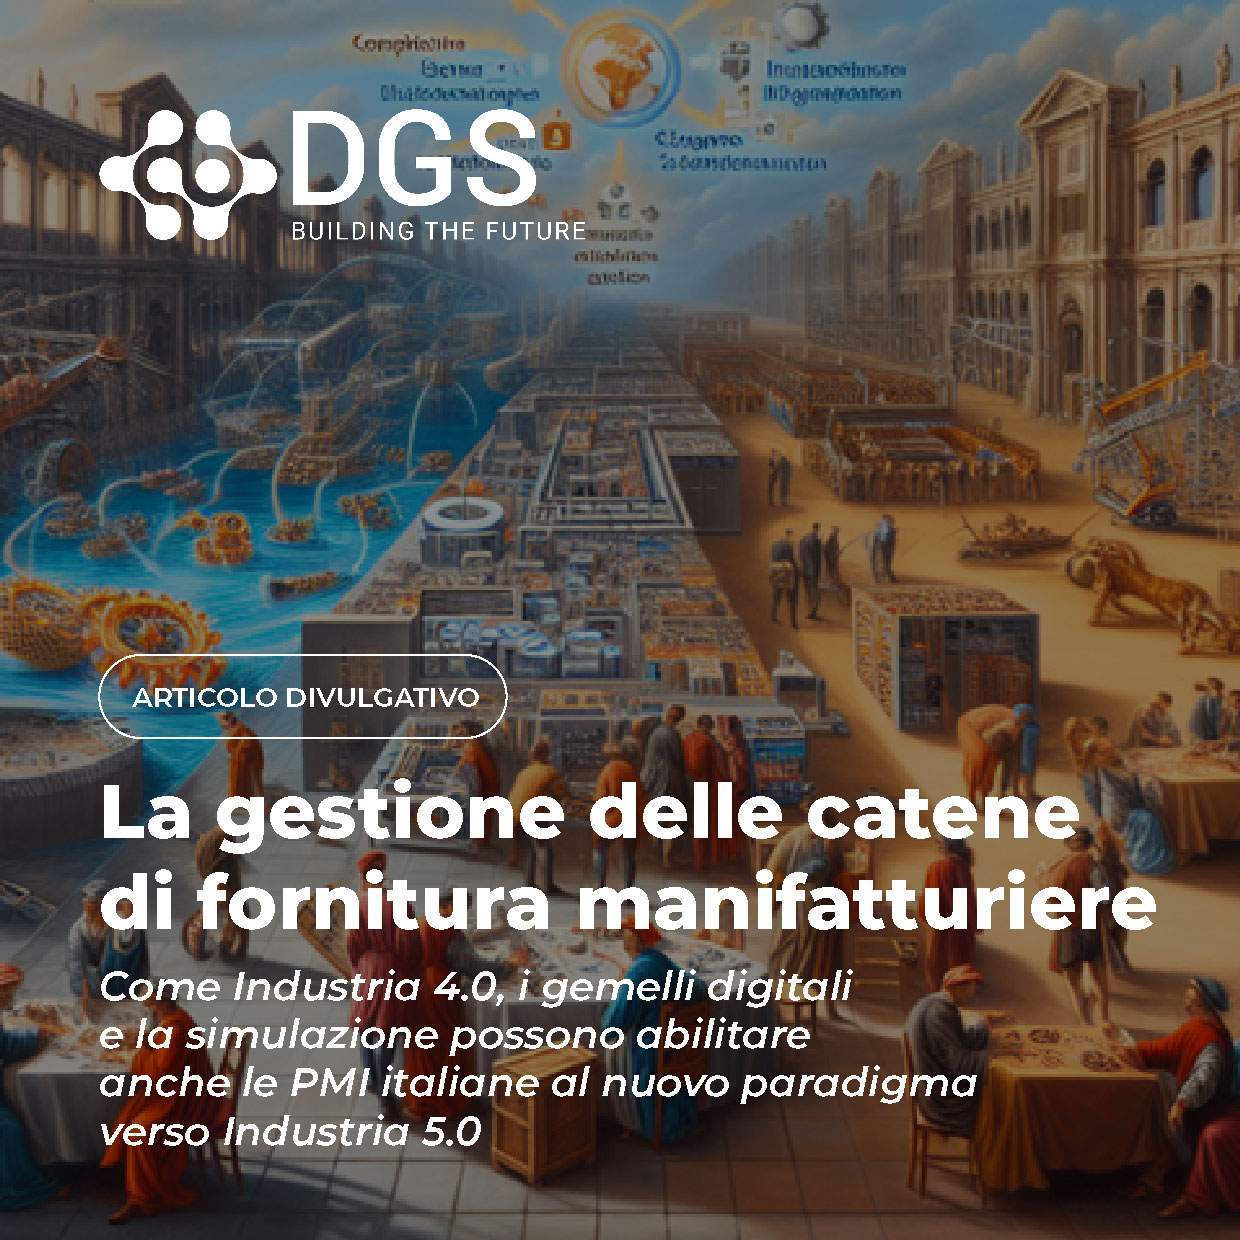 DGS s.p.a – La gestione delle catene di fornitura manifatturiere: come Industria 4.0, i gemelli digitali e la simulazione possono abilitare anche le PMI italiane al nuovo paradigma verso Industria 5.0